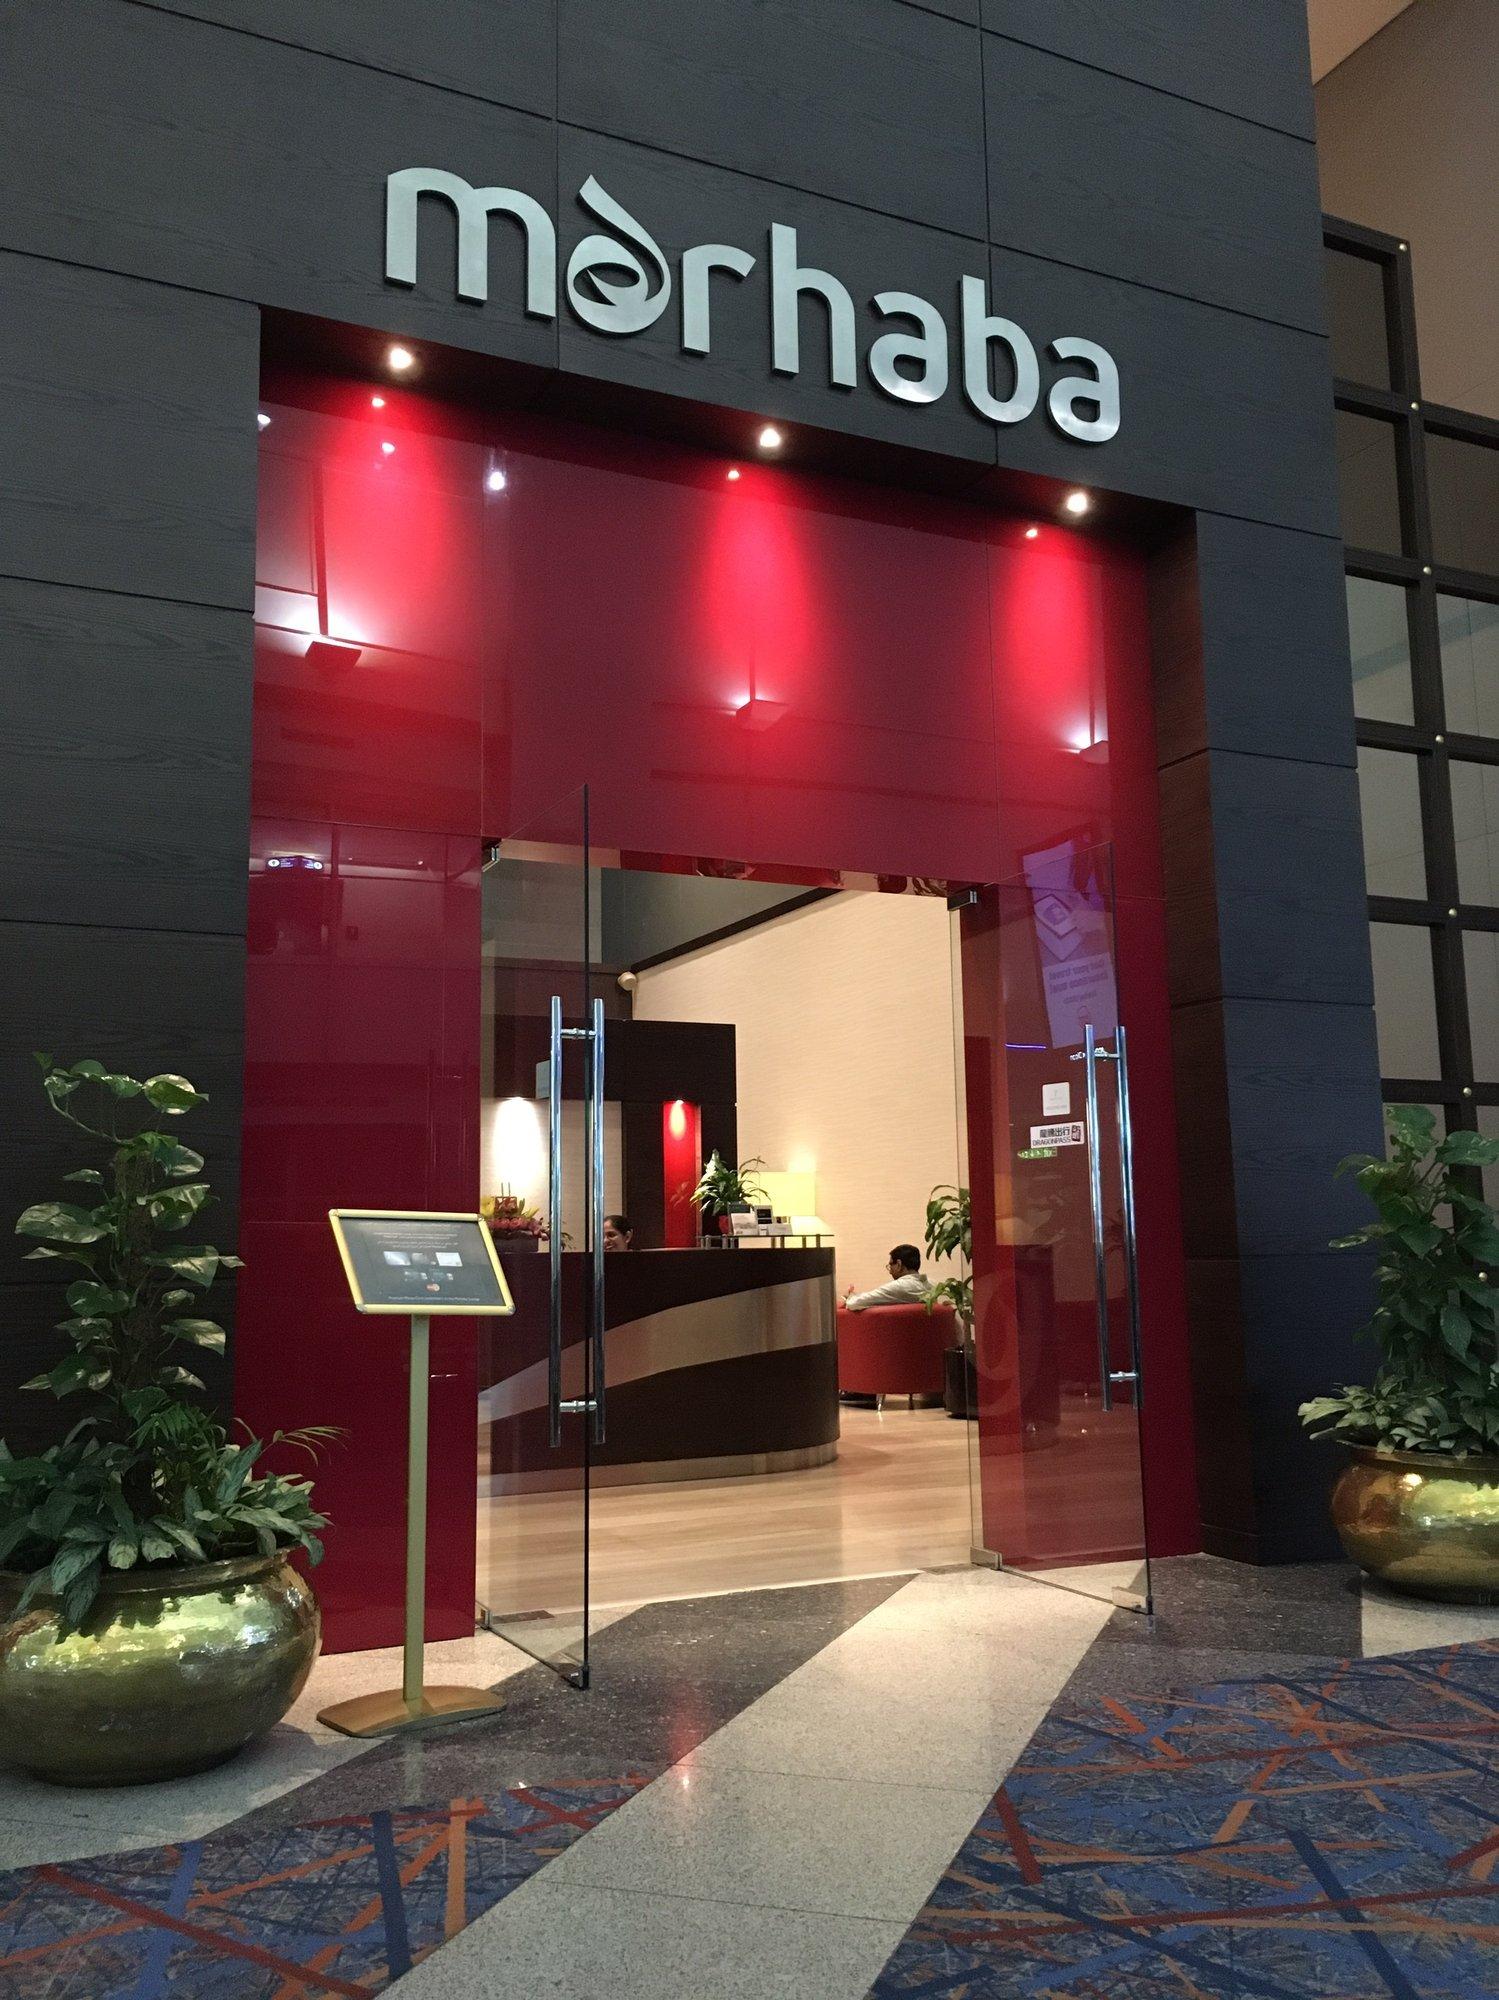 Marhaba Lounge image 13 of 64